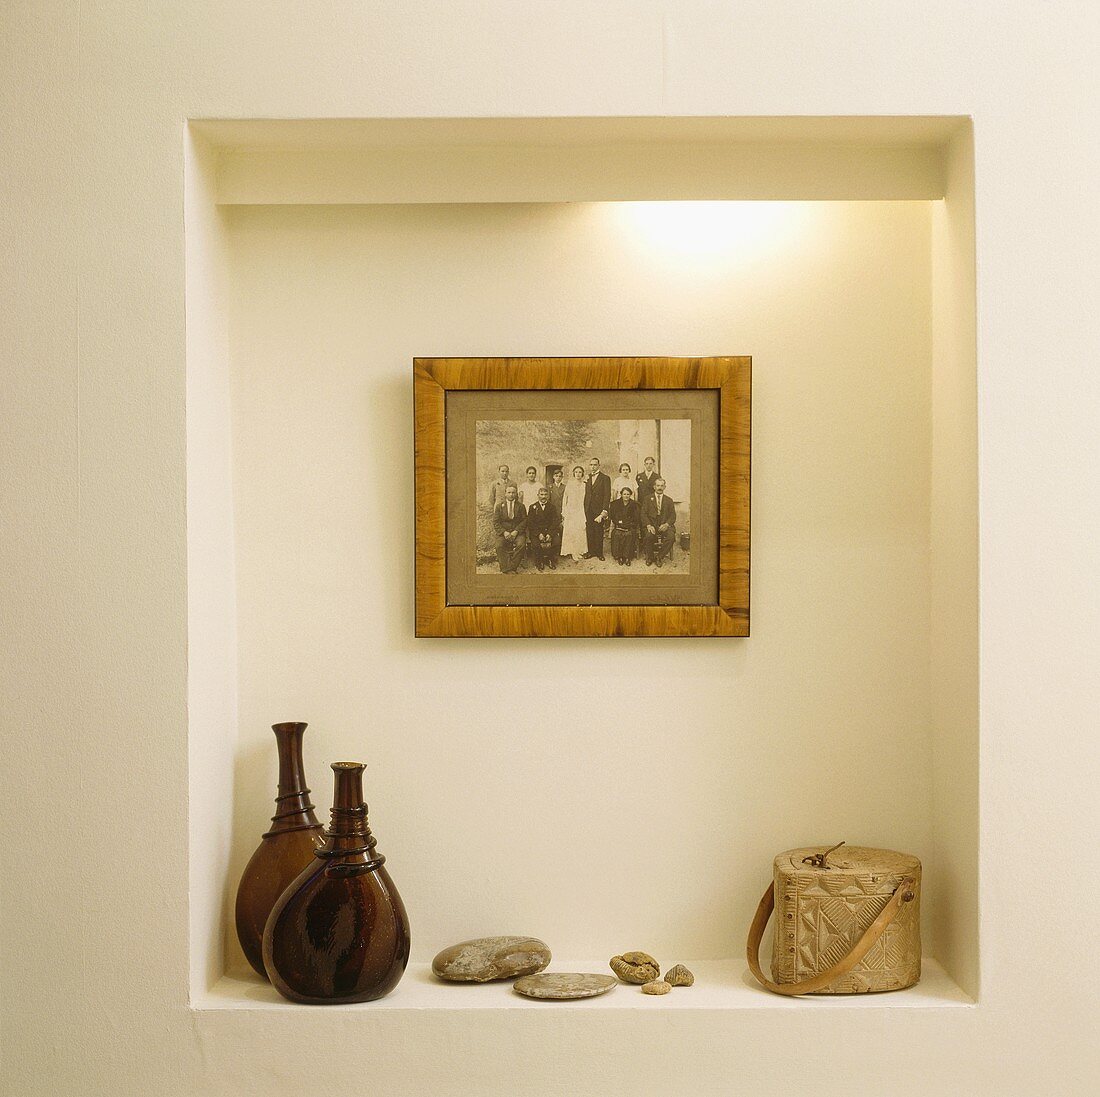 Ein altes schwarz-weiß Foto hängt in einer beleuchteten Nische, auf der zwei braune Glasflaschen und ein Specksteinbehälter stehen